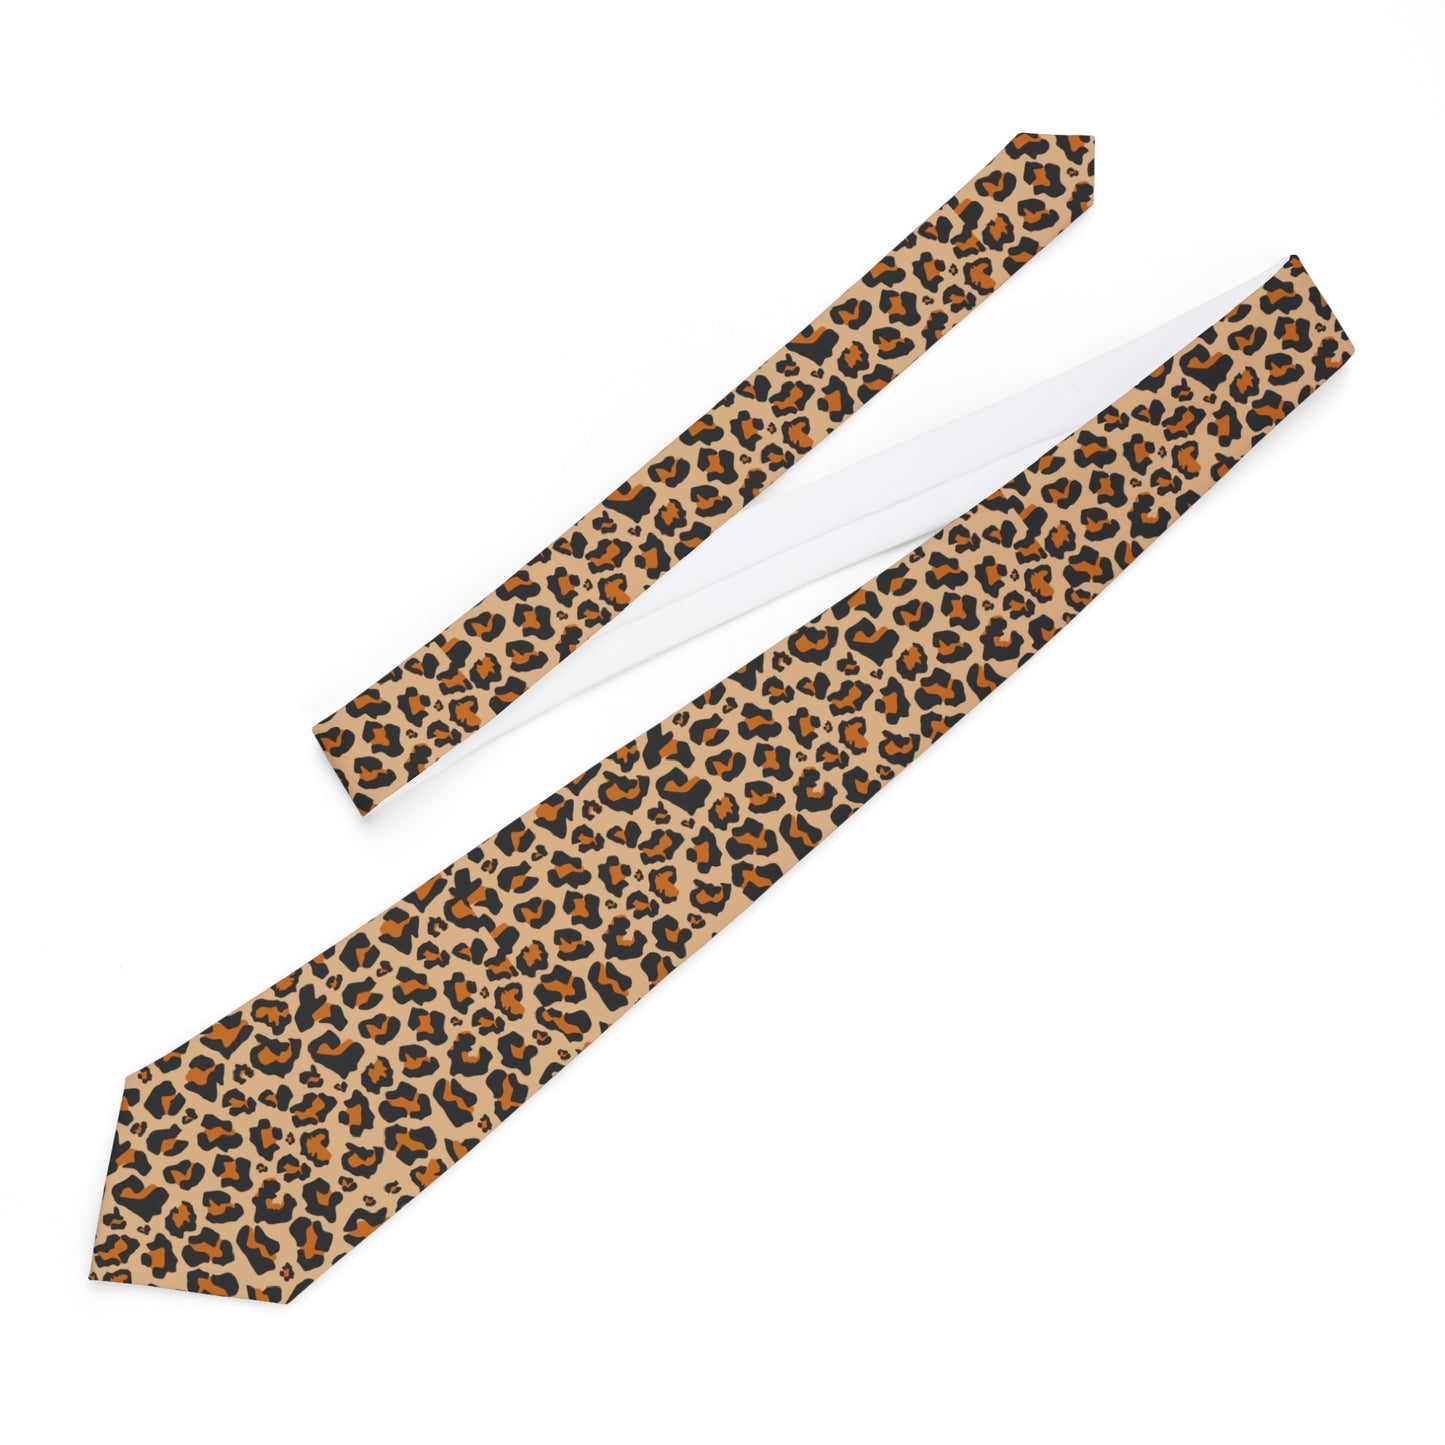 Leopard Necktie, Animal Cheetah Print Neck Tie Fancy Classic Chic Gift for Him Men Tuxedo Groomsmen Groom Wedding Suit Cravat